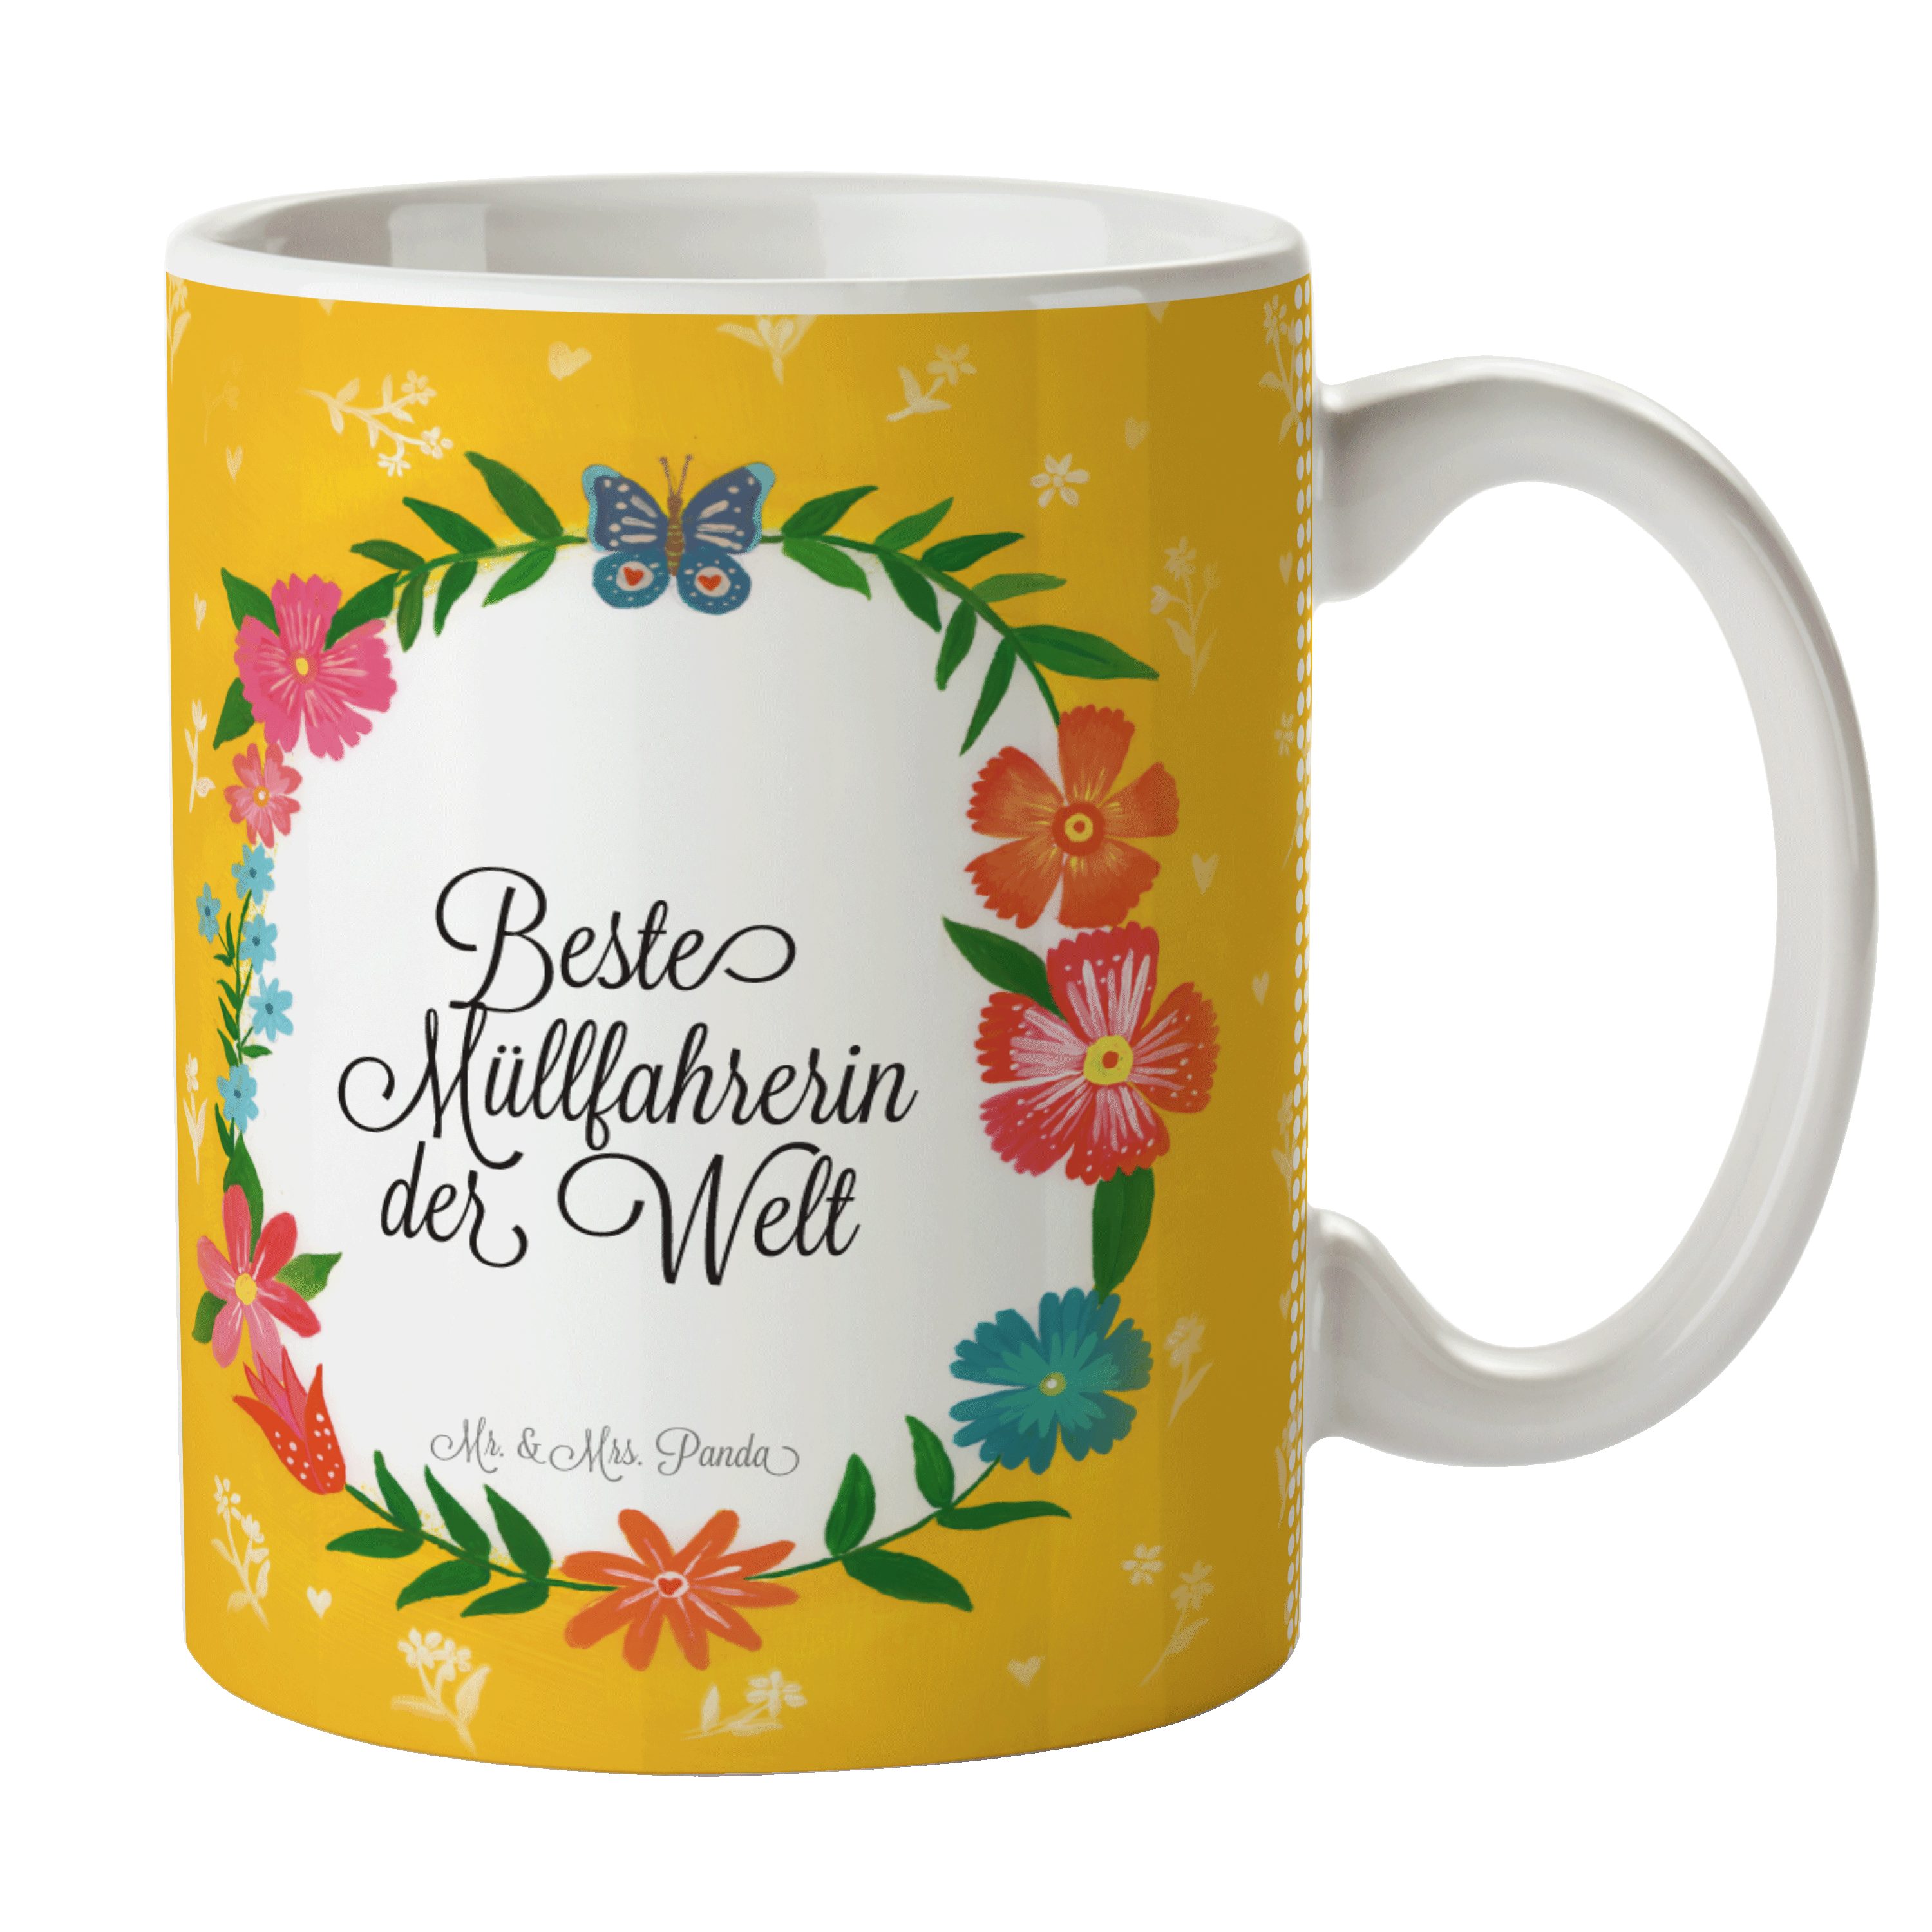 Mr. & Mrs. Panda Geschenk, - Ausbildung, Abschluss, Müllfahrerin Keramikt, Tasse Keramik Kaffeetasse